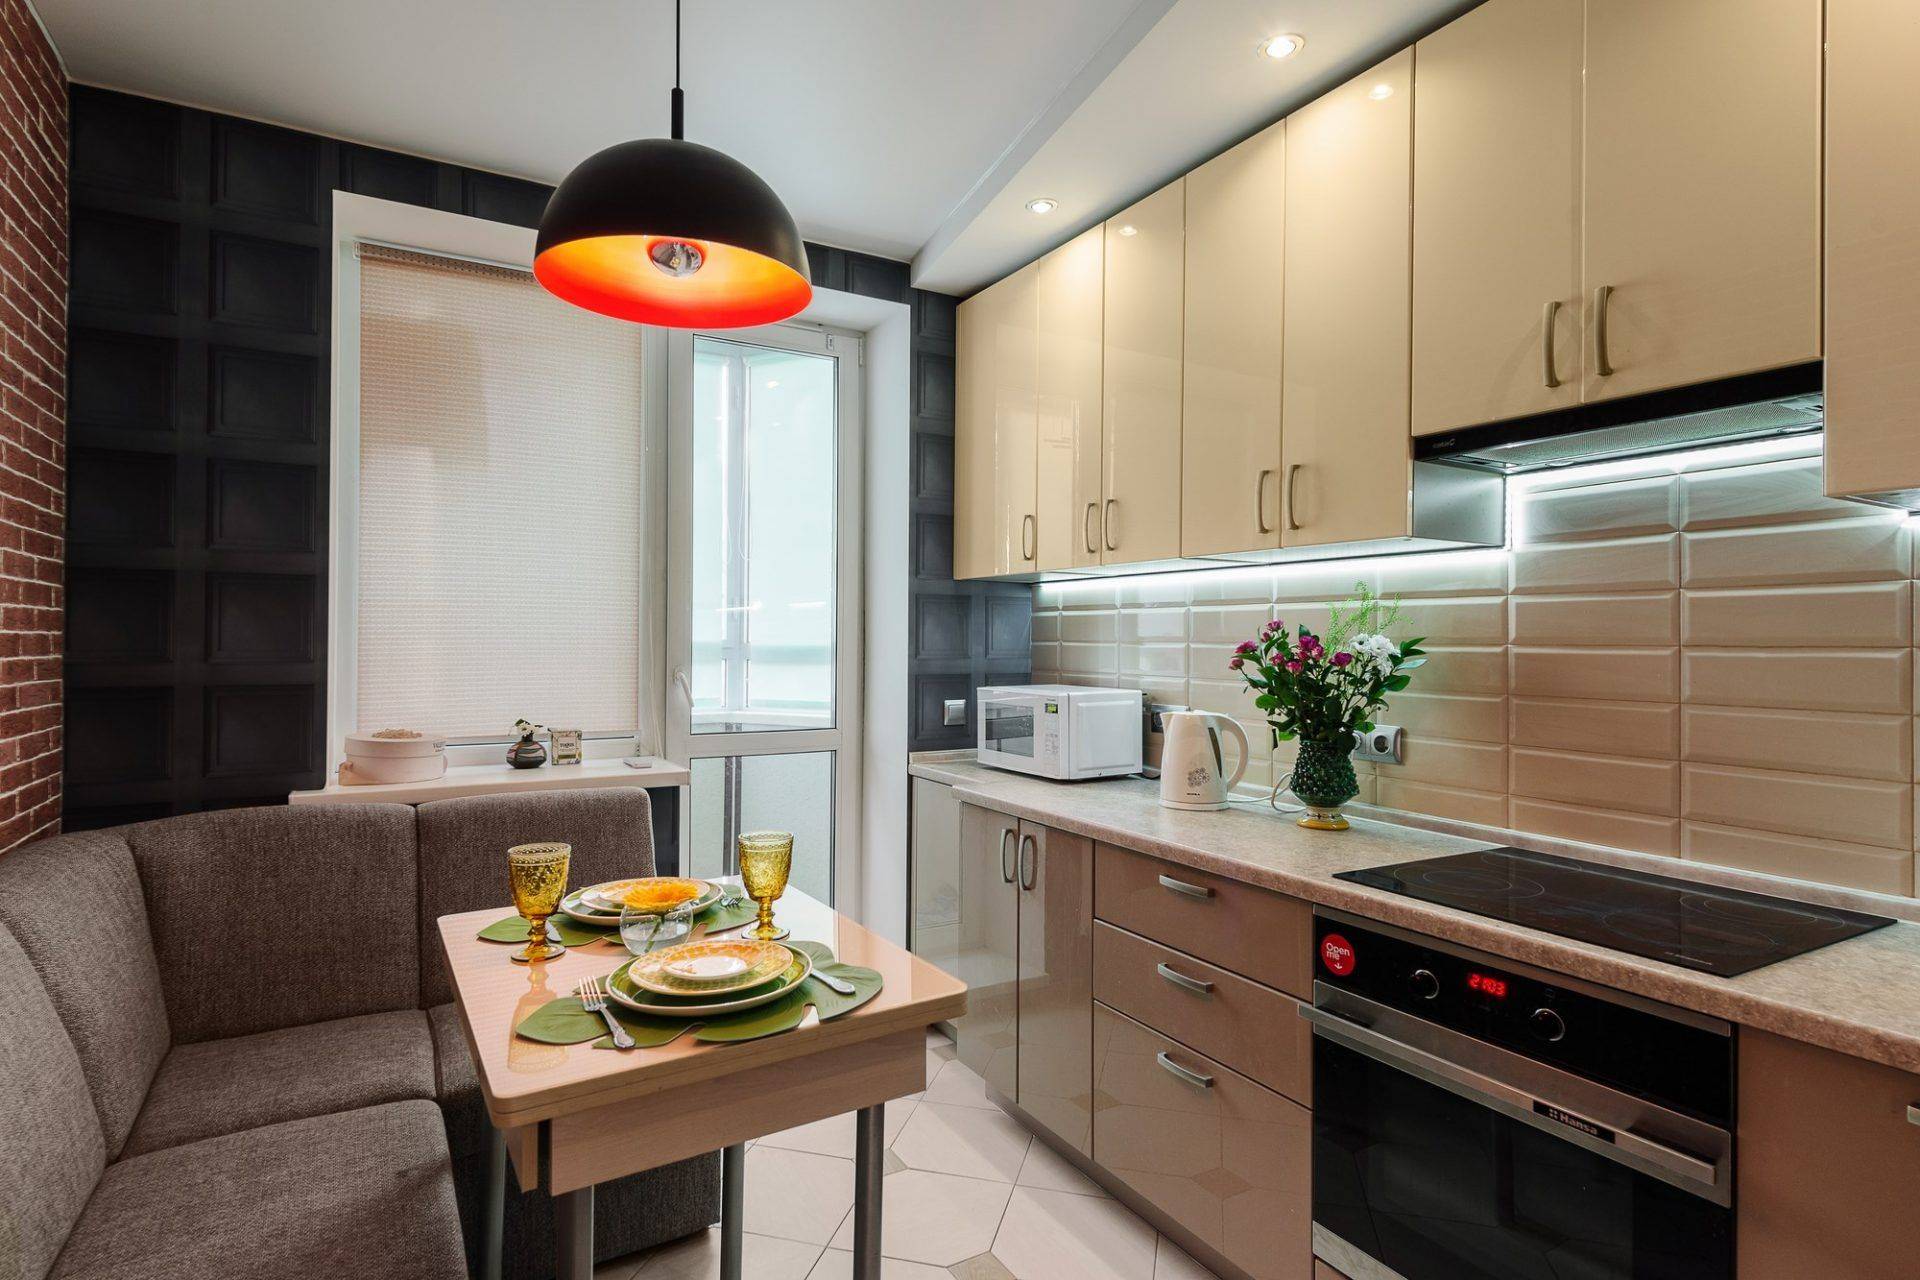 Кухня в современном стиле 2022 - дизайн с фото: интерьер, цвет, освещение, мебель, шторы и тюль, бюджетные идеи, новинки